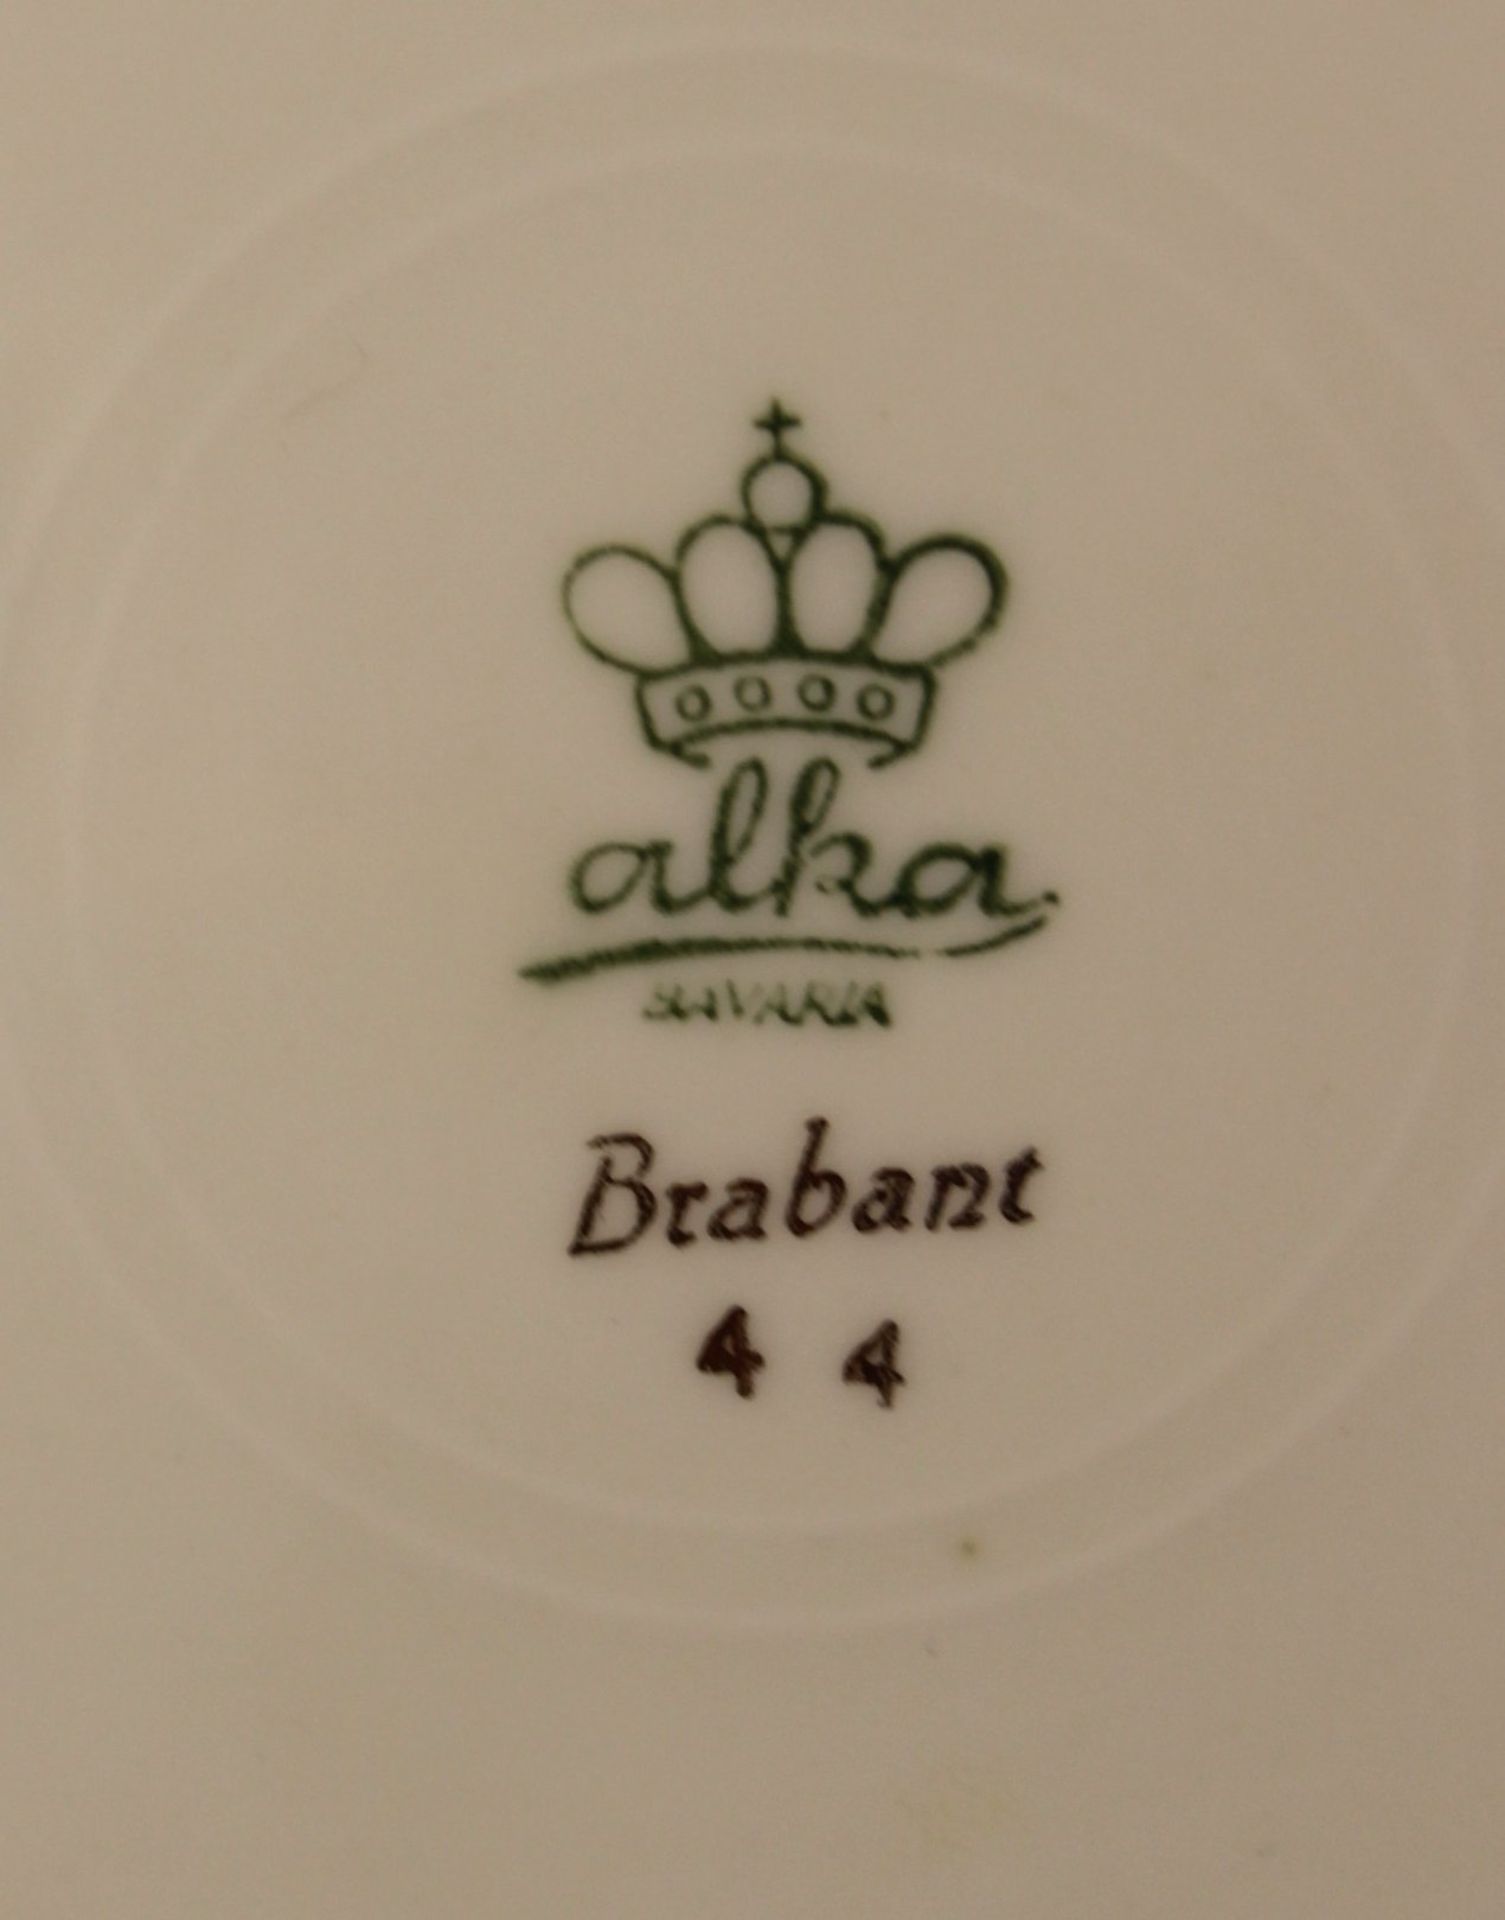 Konfektset, alka, Dekor Brabant, Schale mit 5 kl. Tellern - Image 2 of 2